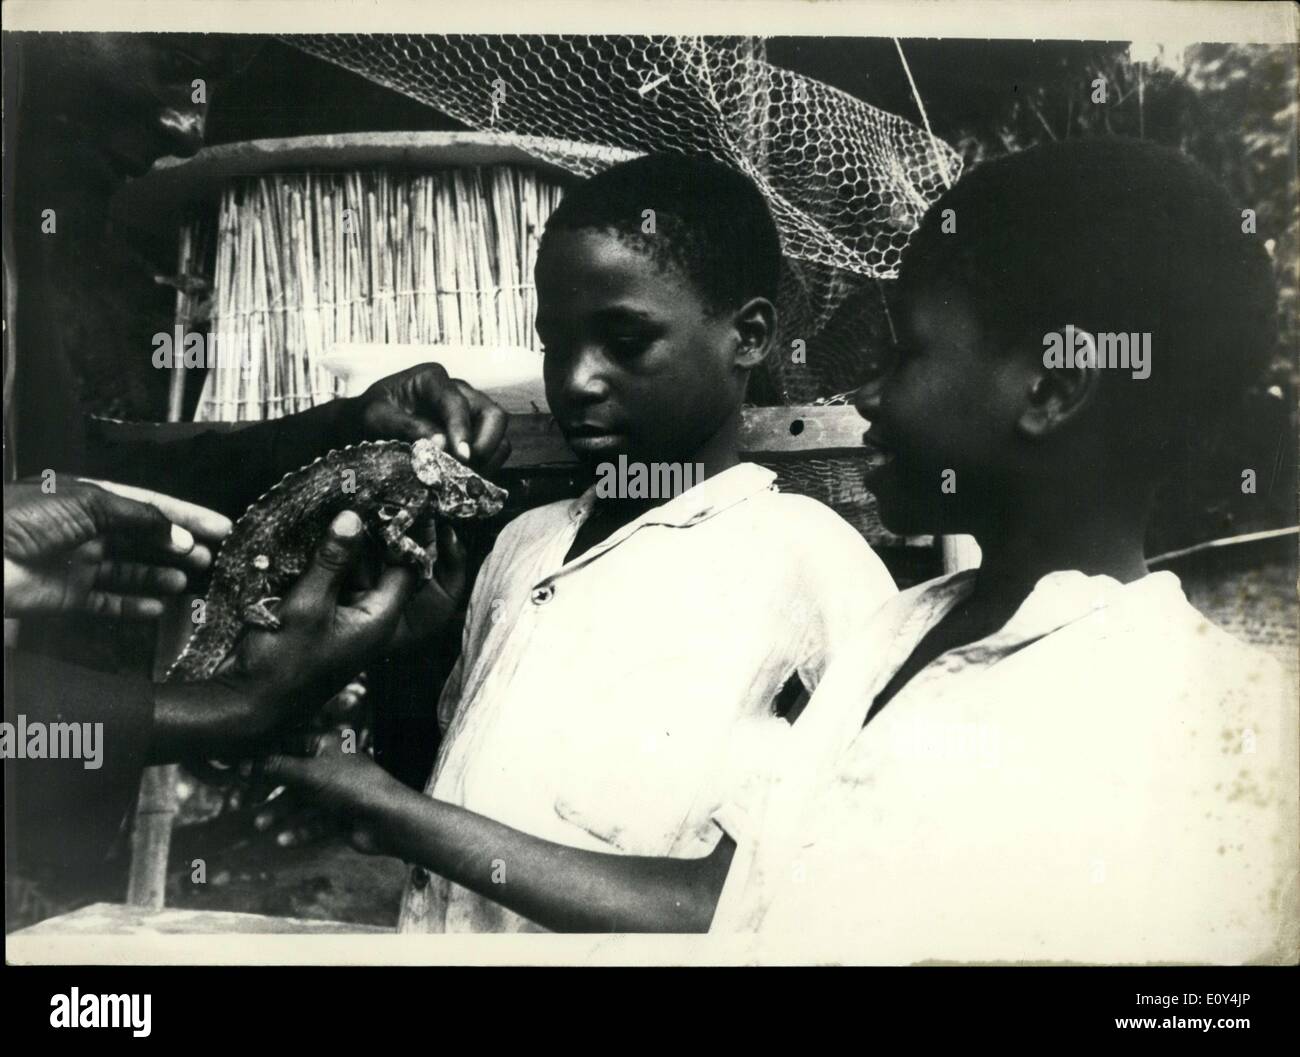 14 octobre 1968 - Le centre d'études scientifiques en Malawi, Domasi fait partie de l'UNESCO et la collaboration de l'UNICEF qui vise à enseigner aux enseignants de l'école primaire les méthodes modernes d'enseignement des sciences naturelles. Le programme prévoit de former 1 500 enseignants dans deux ans pour 250 écoles primaires au Malawi. Banque D'Images